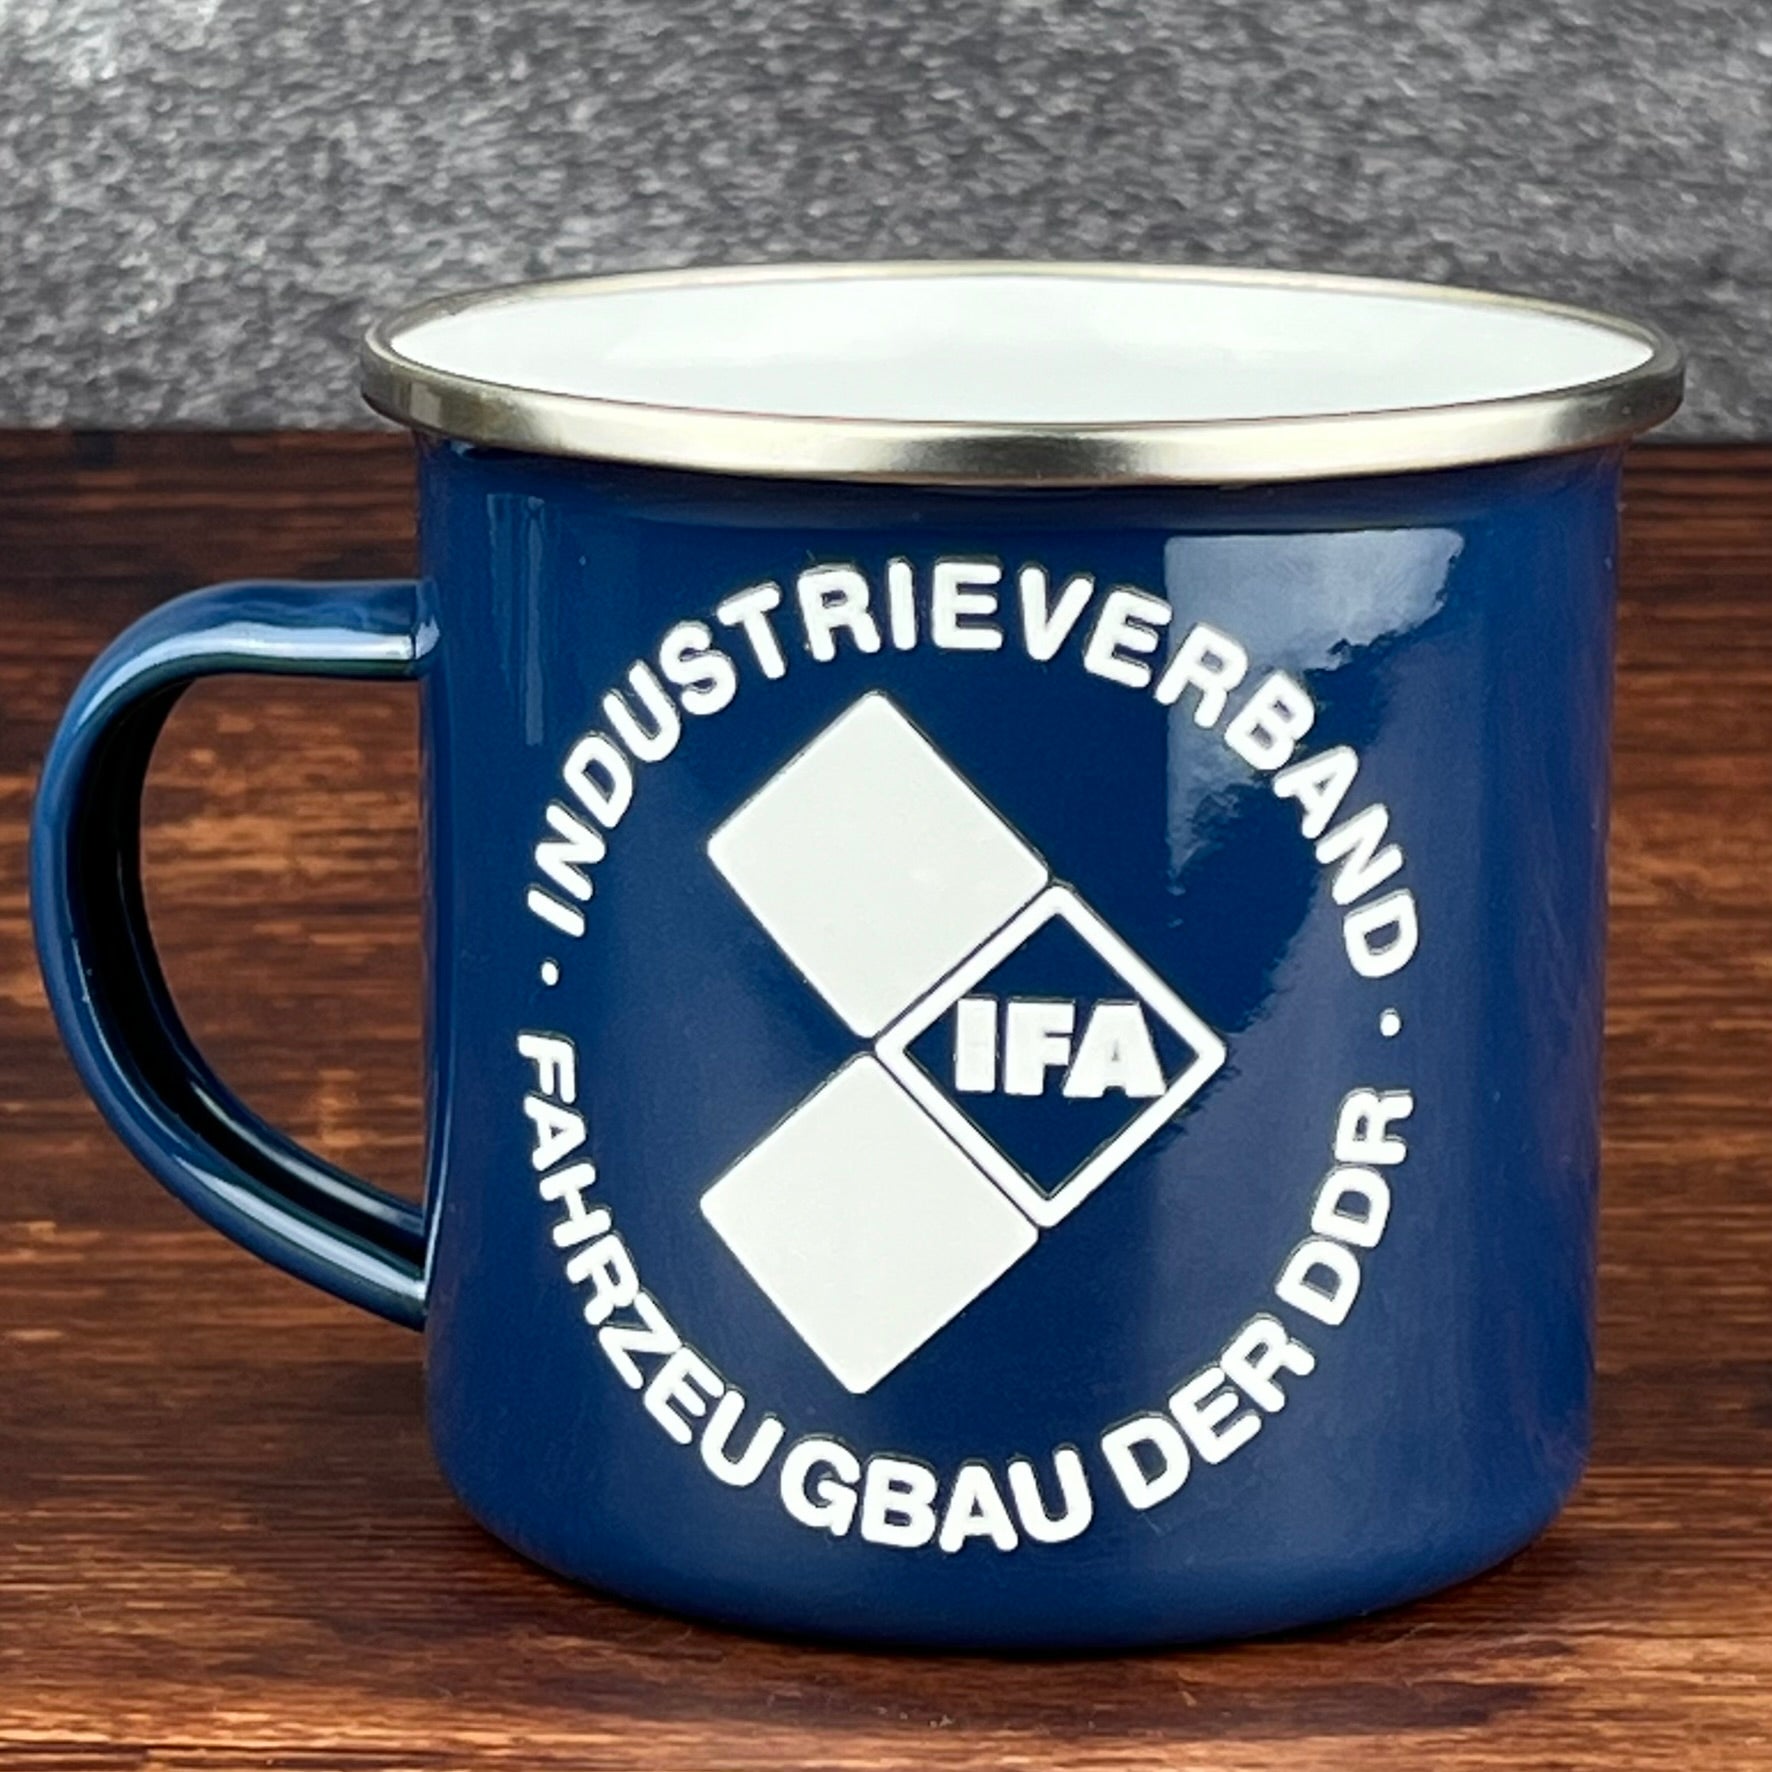 Farbige Emailletasse / Tasse, IFA Industrieverband Fahrzeugbau der DDR, dunkelblau